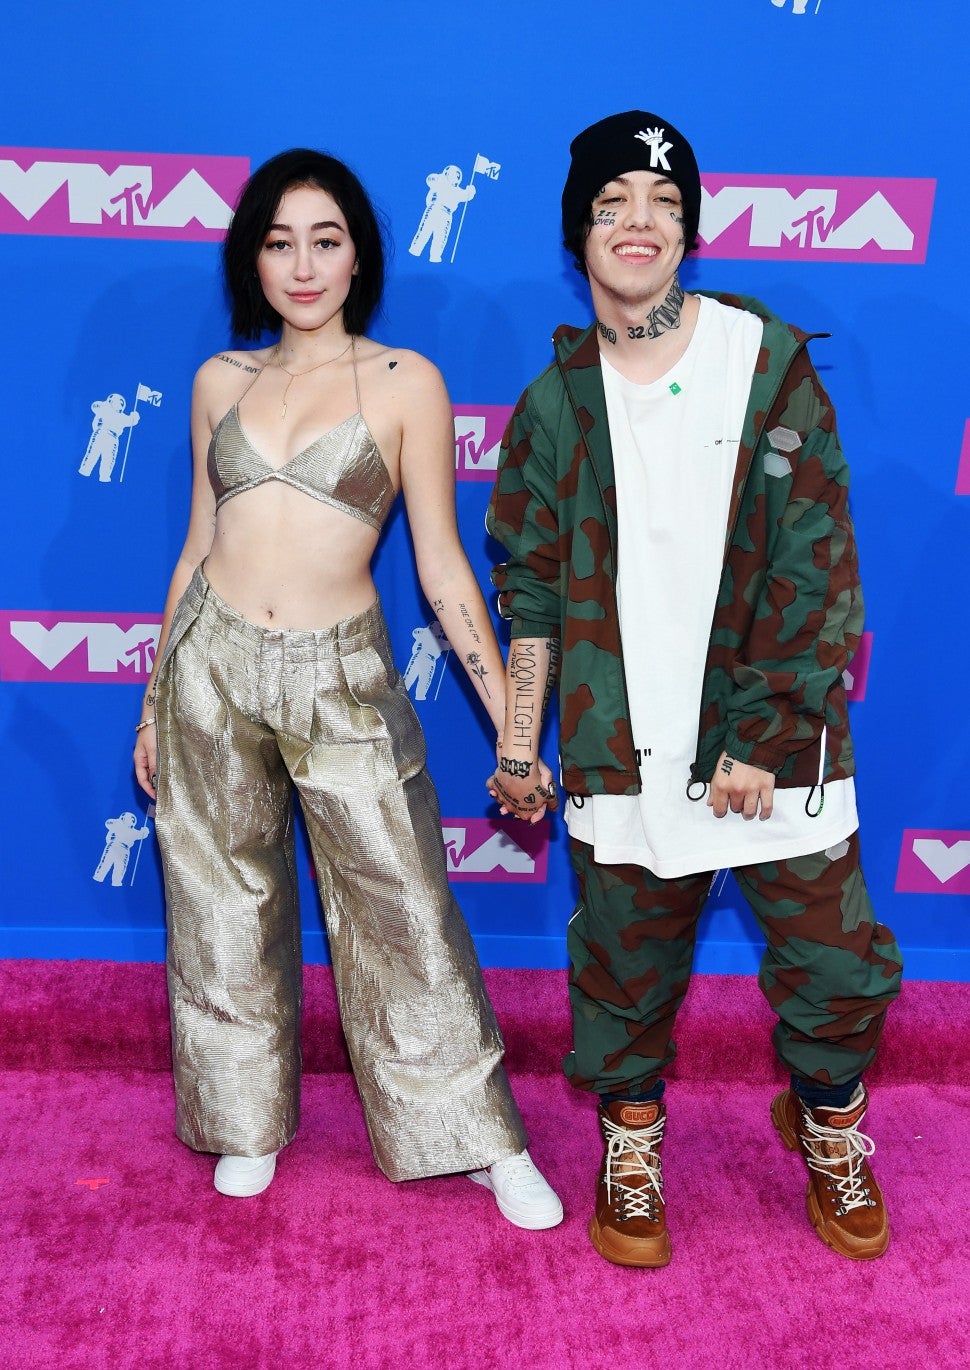 Noah Cyrus and Lil Xan at 2018 MTV VMAs